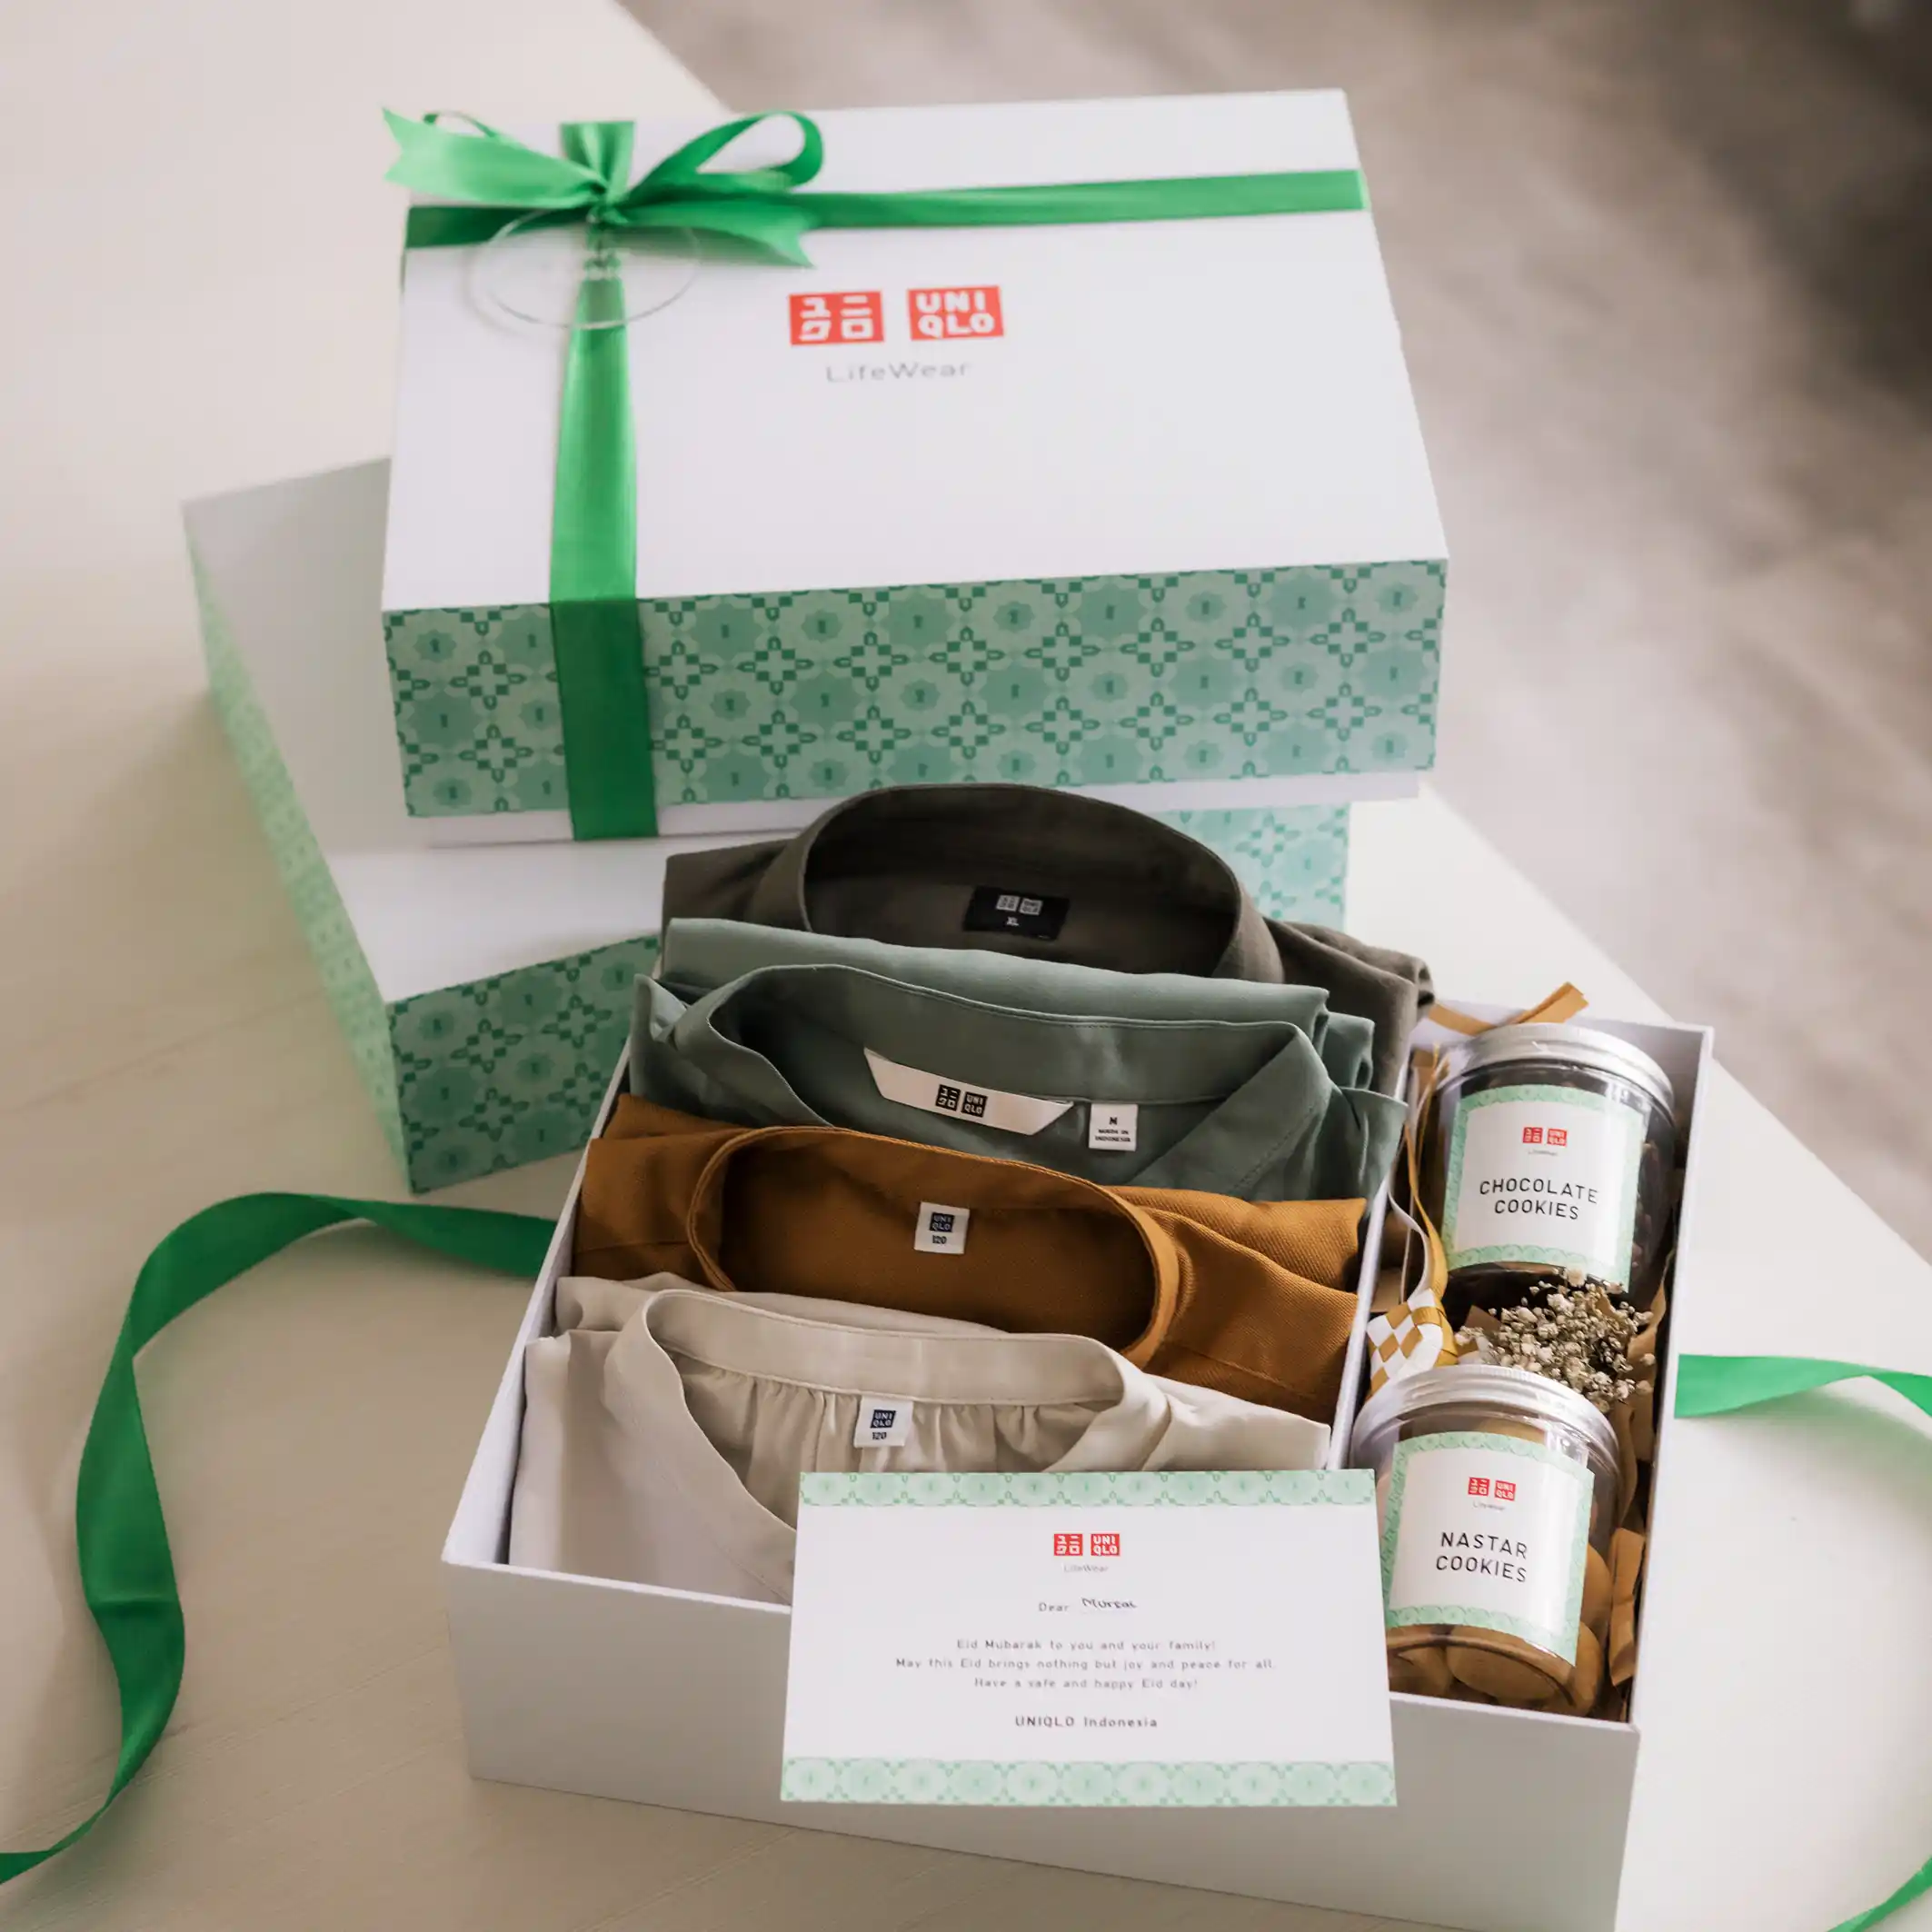 Make Personalized Gift Box